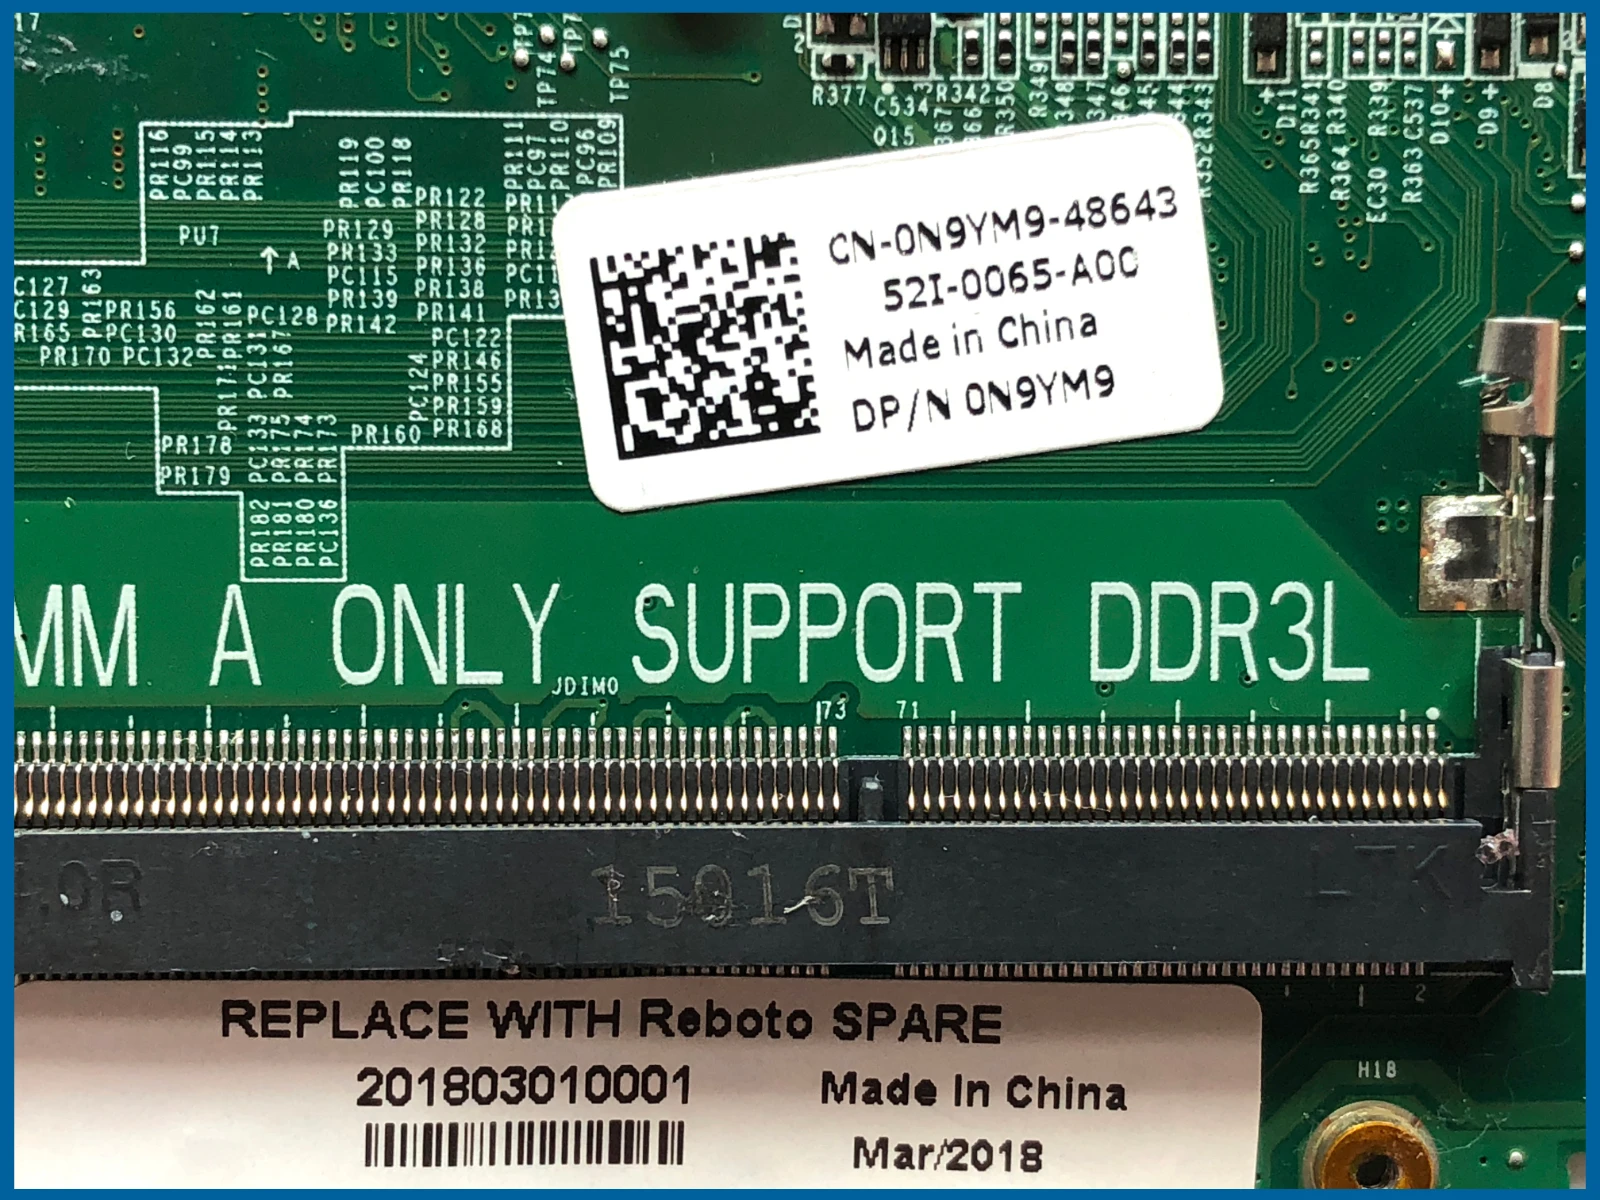 Най-добрата стойност CN-0N9YM9 за Dell Inspiron 7548 дънна Платка на лаптоп DA0AM6MB8F1 SR23W I7-5500U 216-0855000 DDR3L 100% тествана